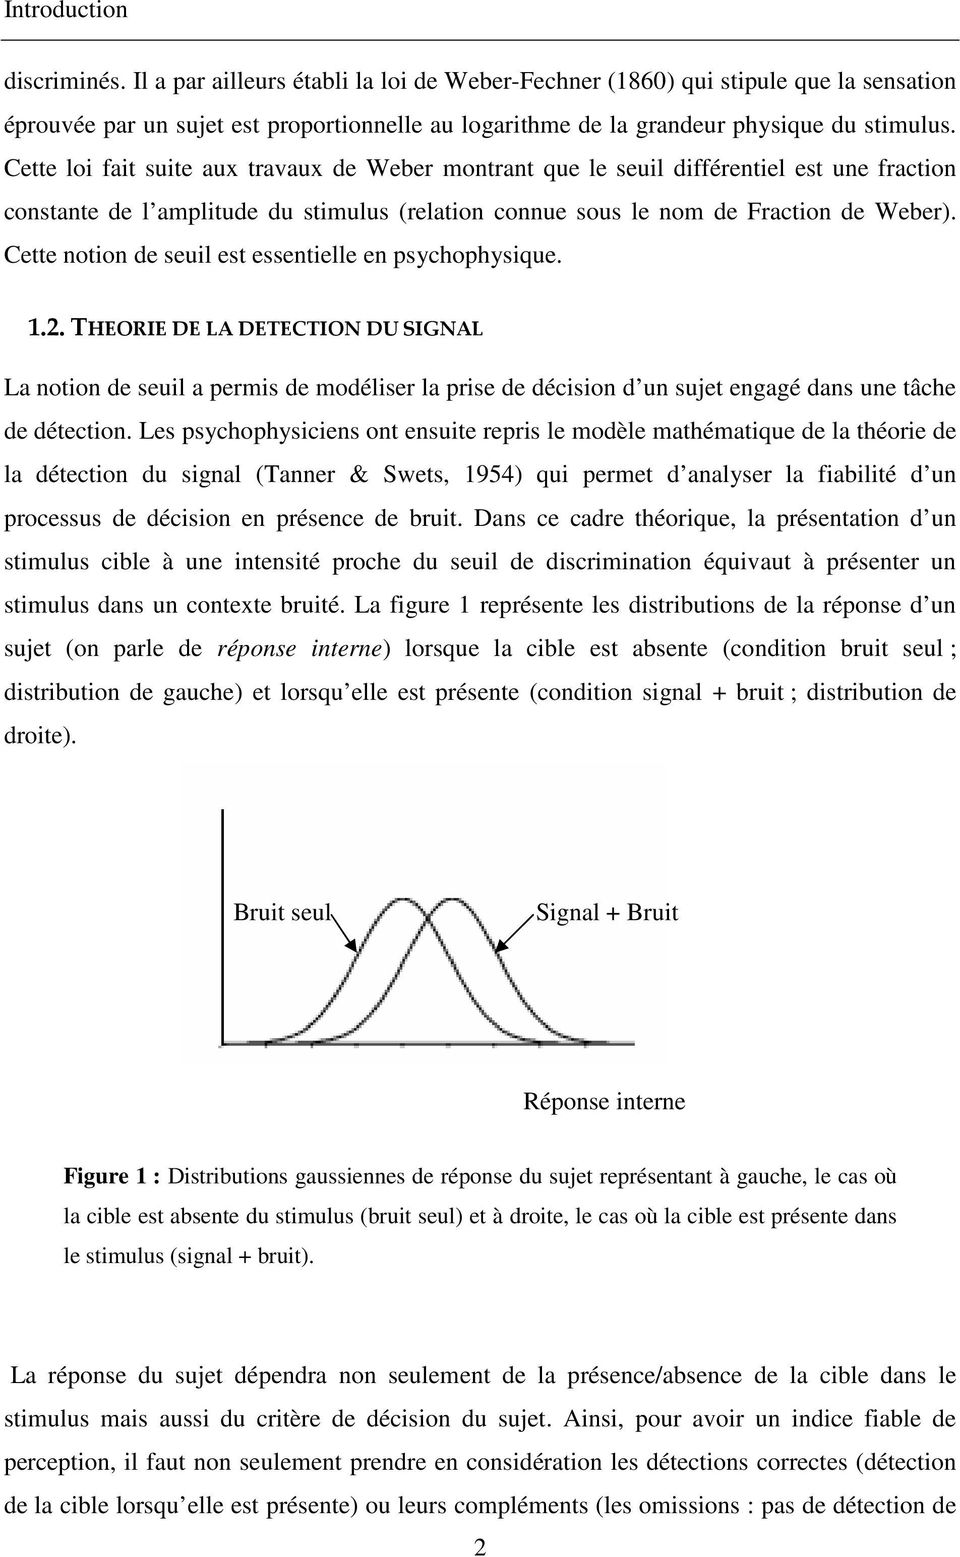 Cette loi fait suite aux travaux de Weber montrant que le seuil différentiel est une fraction constante de l amplitude du stimulus (relation connue sous le nom de Fraction de Weber).